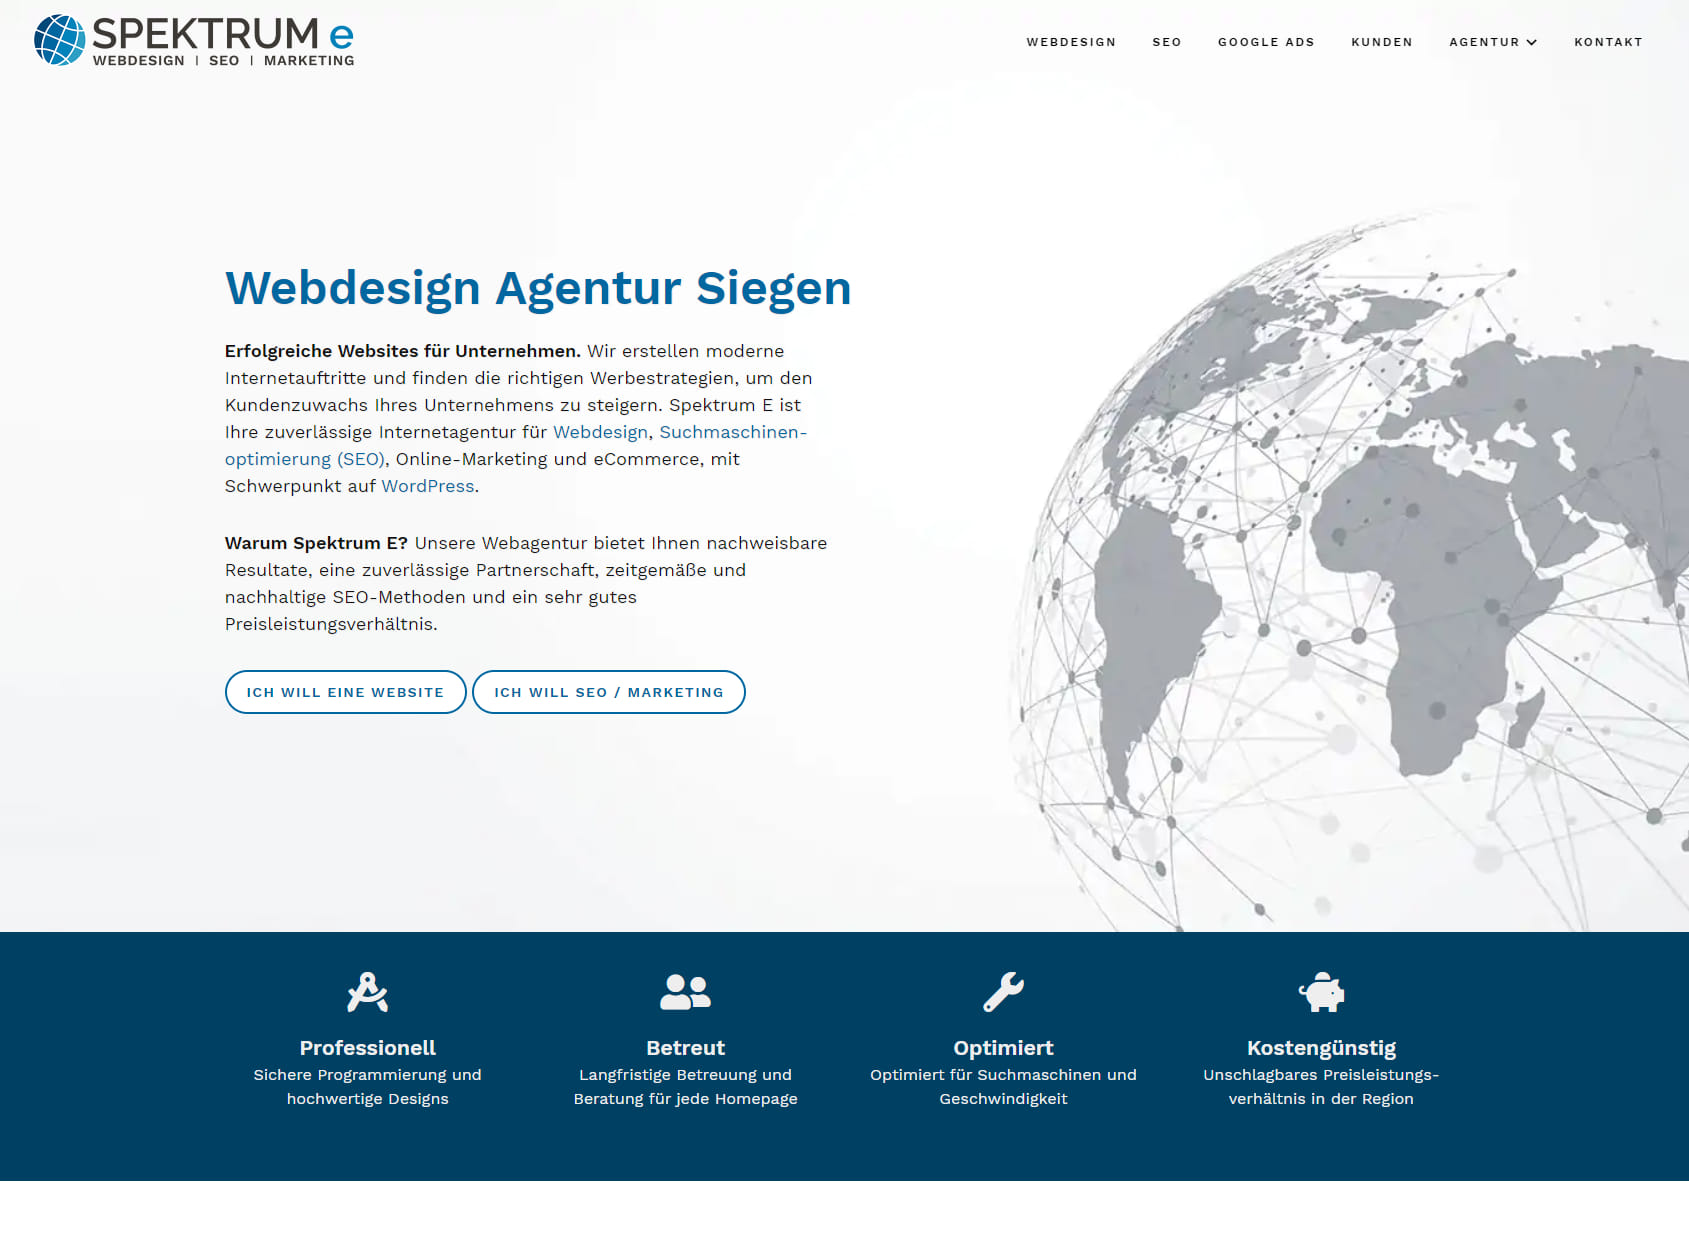 Spektrum E Webdesign